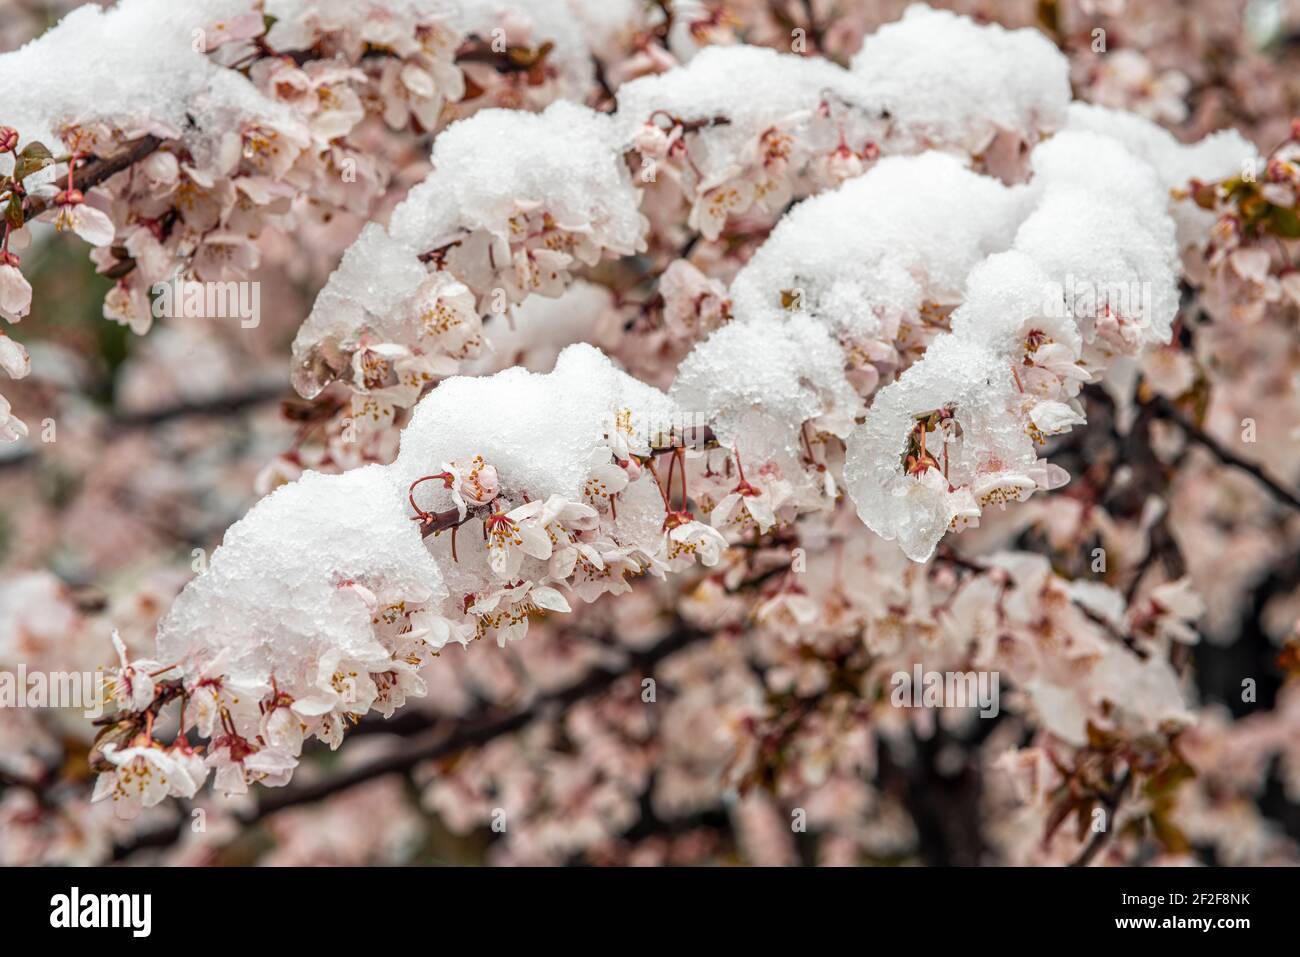 Les prunes fleurissent sous la neige d'une chute de neige soudaine en mars. Abruzzes, Italie, Europe Banque D'Images